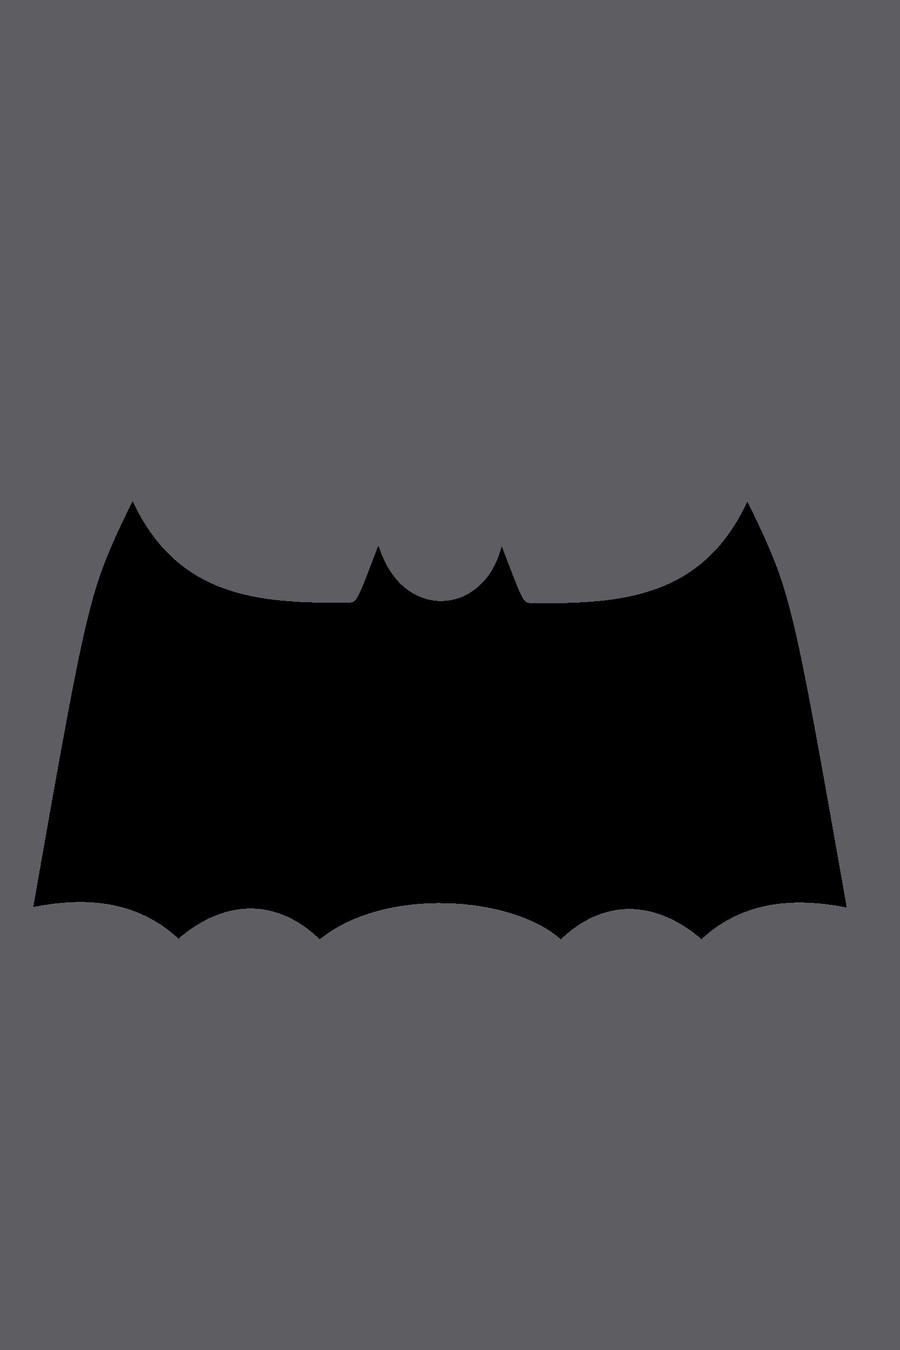 Lambang Batman The Dark Knight